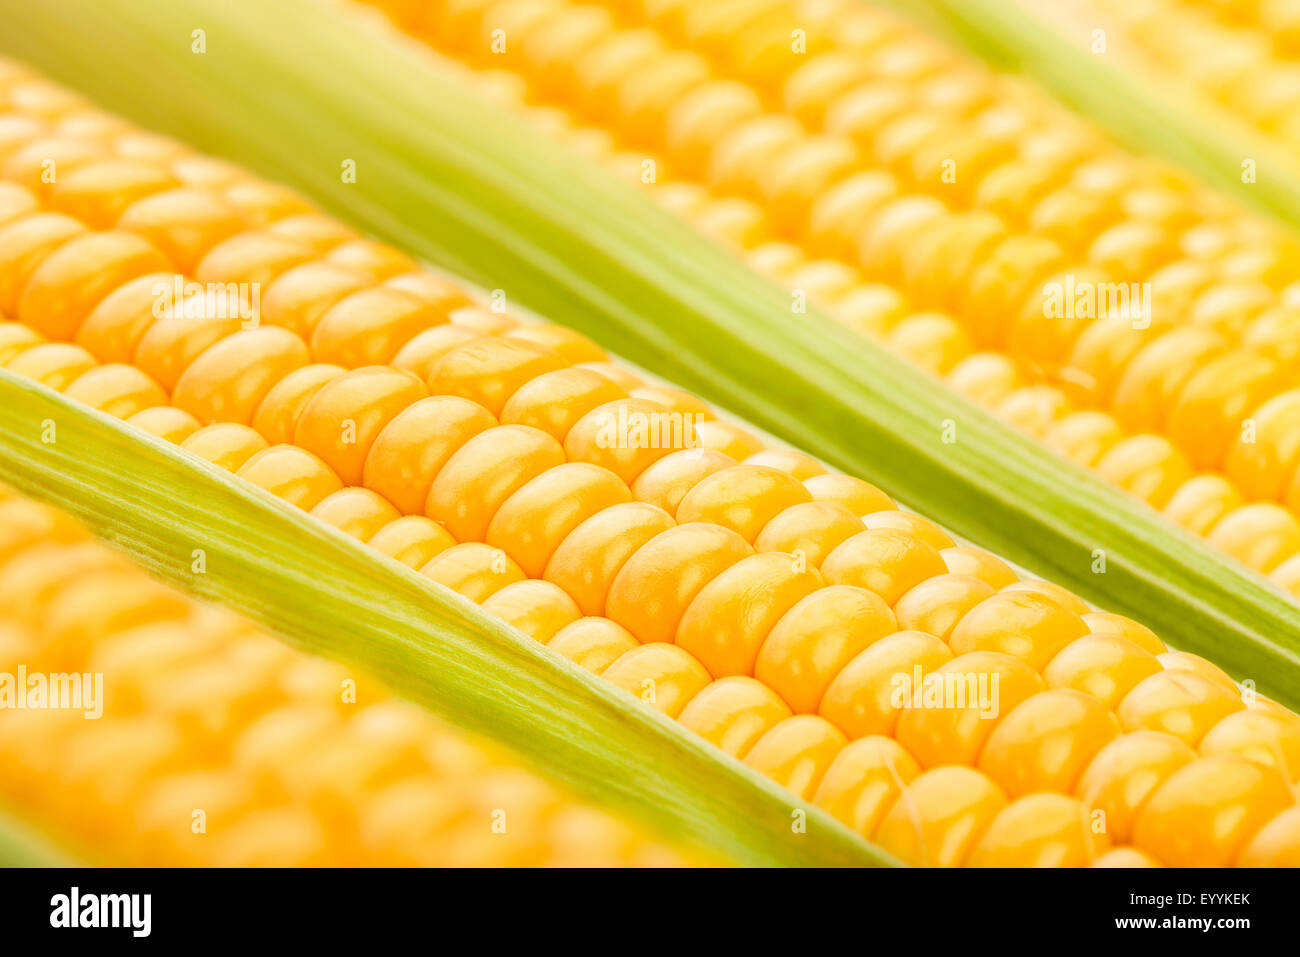 corn closeup Stock Photo